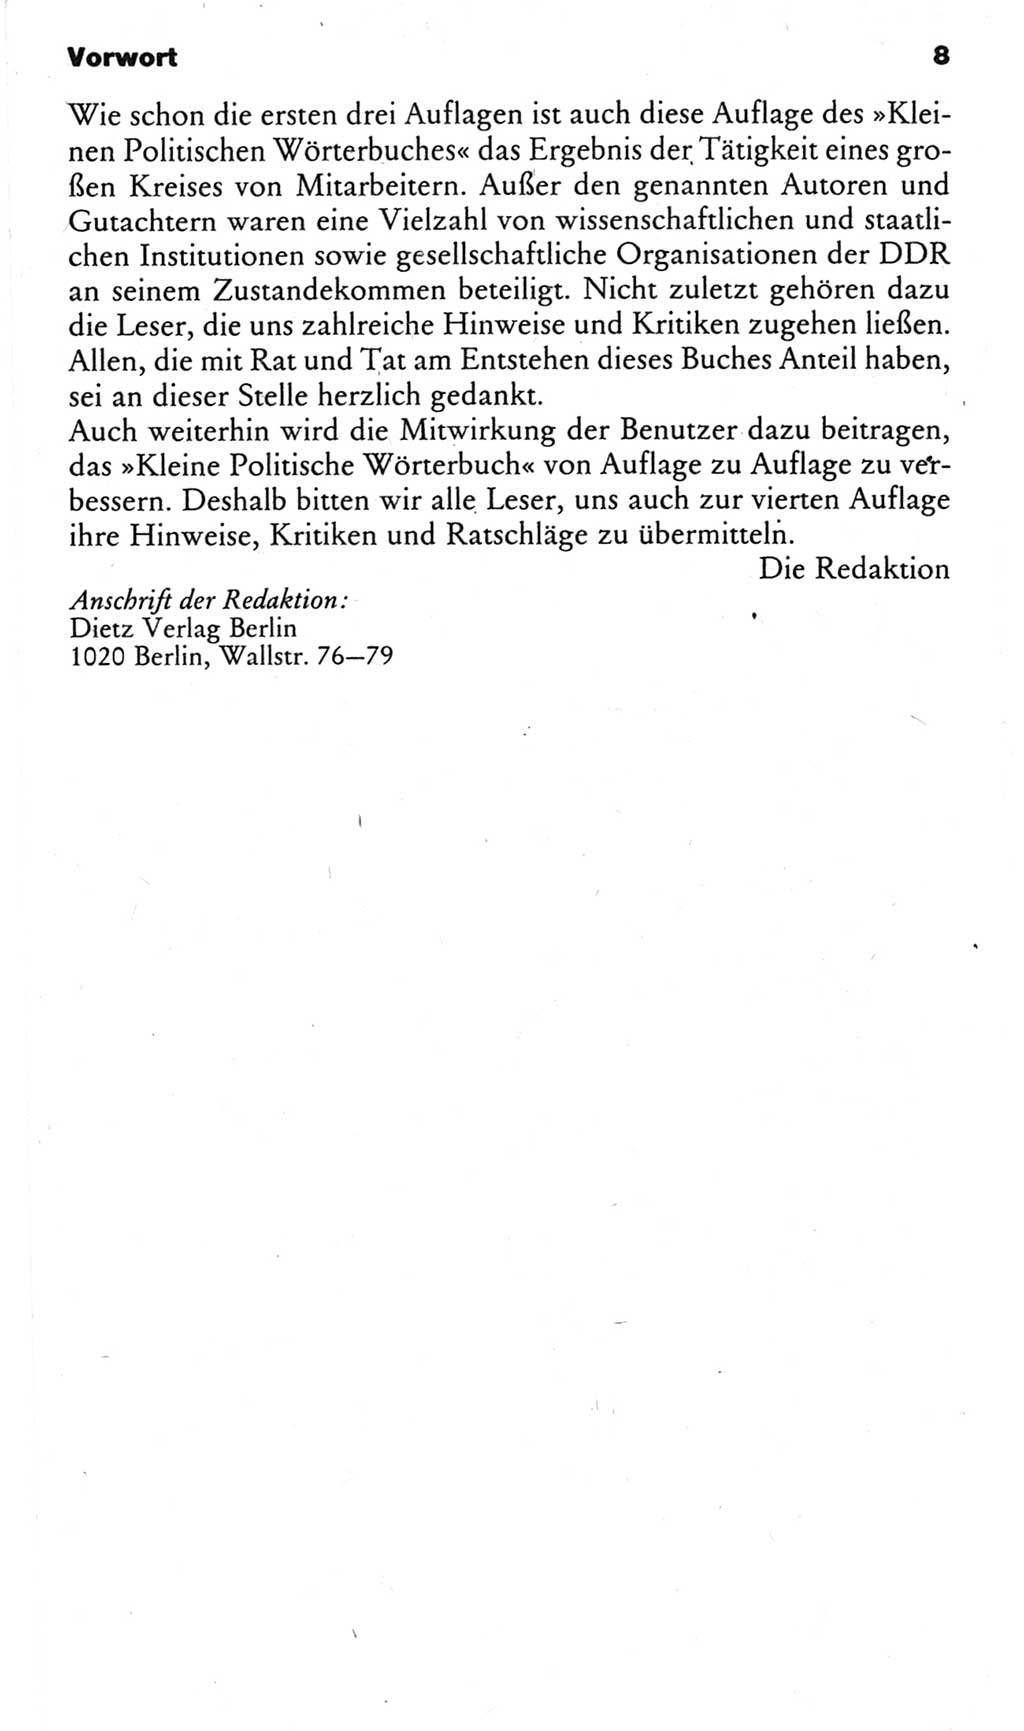 Kleines politisches Wörterbuch [Deutsche Demokratische Republik (DDR)] 1983, Seite 8 (Kl. pol. Wb. DDR 1983, S. 8)